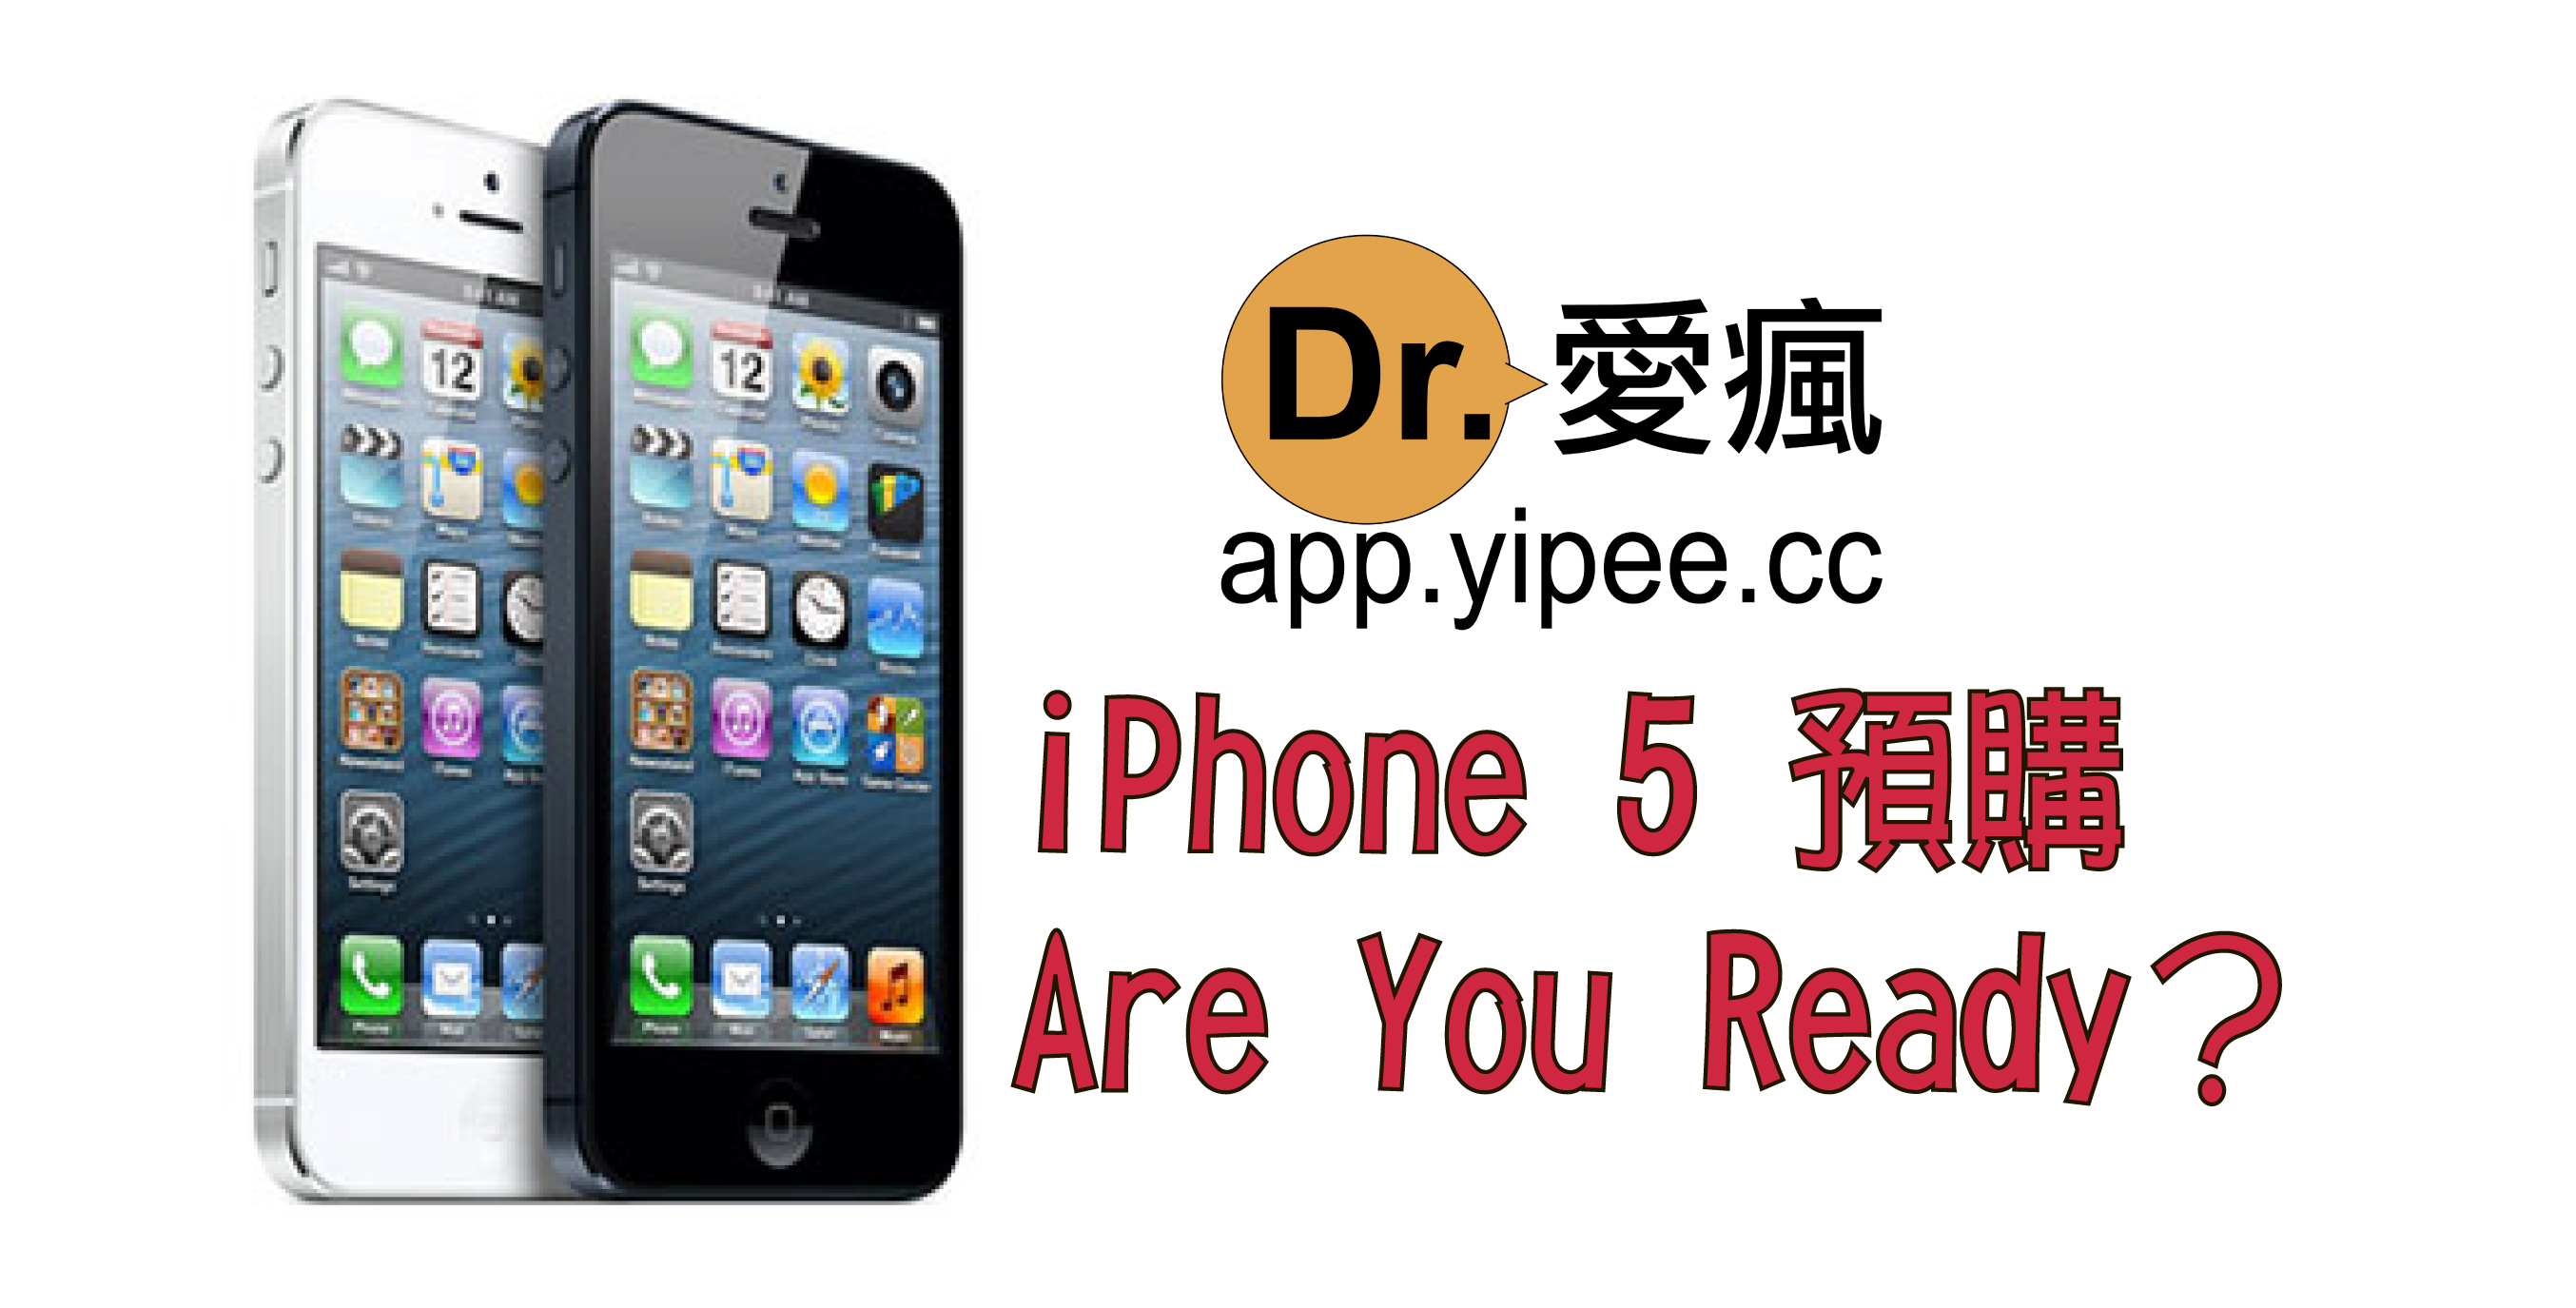 台灣地區 iPhone 5 活動預購 12月 5 日 10 點起跑，想知道有什麼差別嗎?大家準備好了嗎？